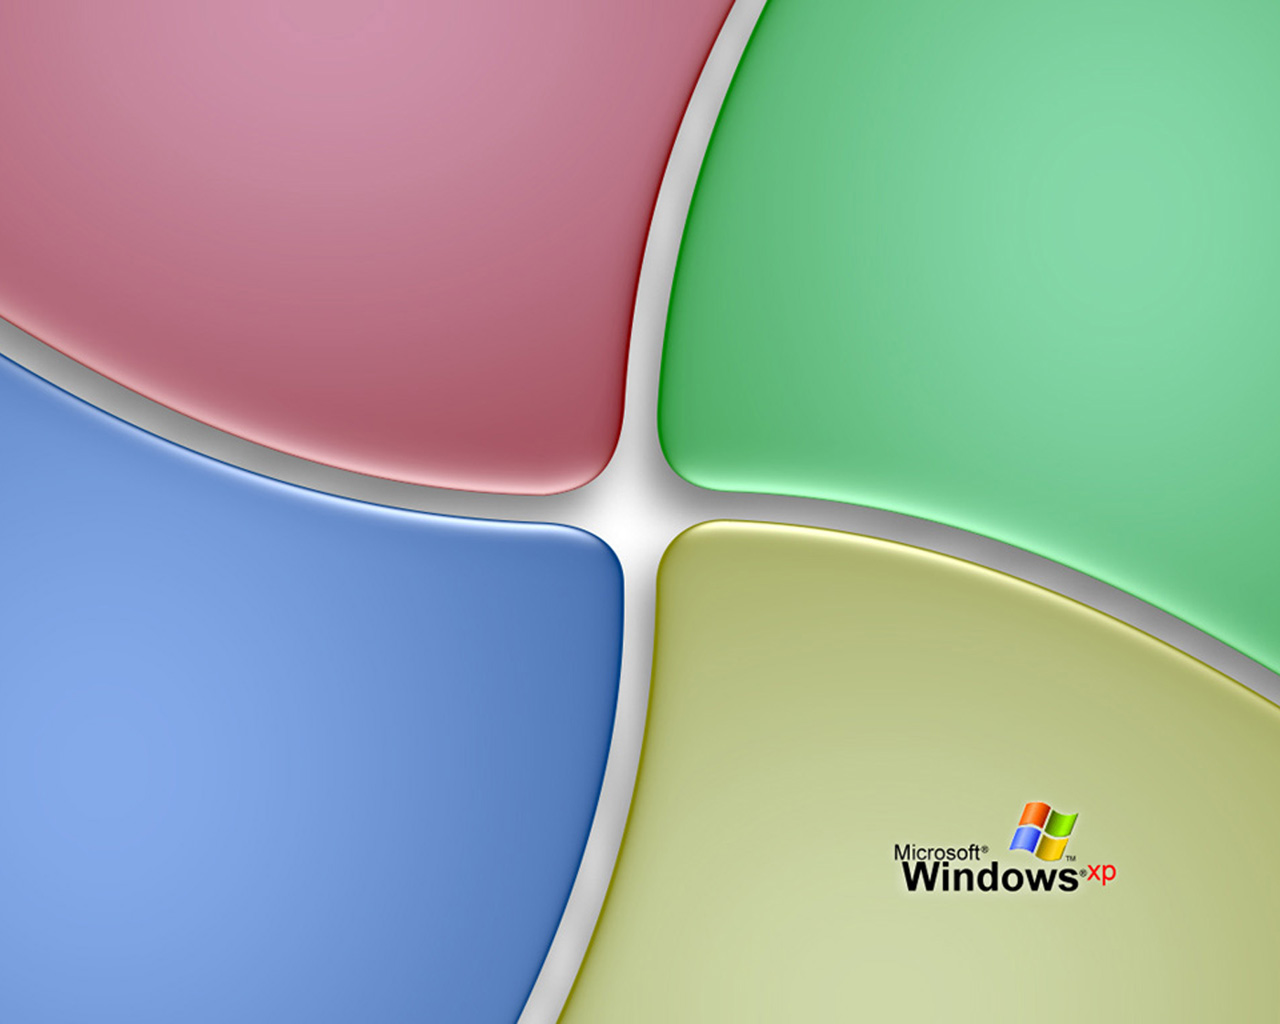 windowsxp11280.jpg